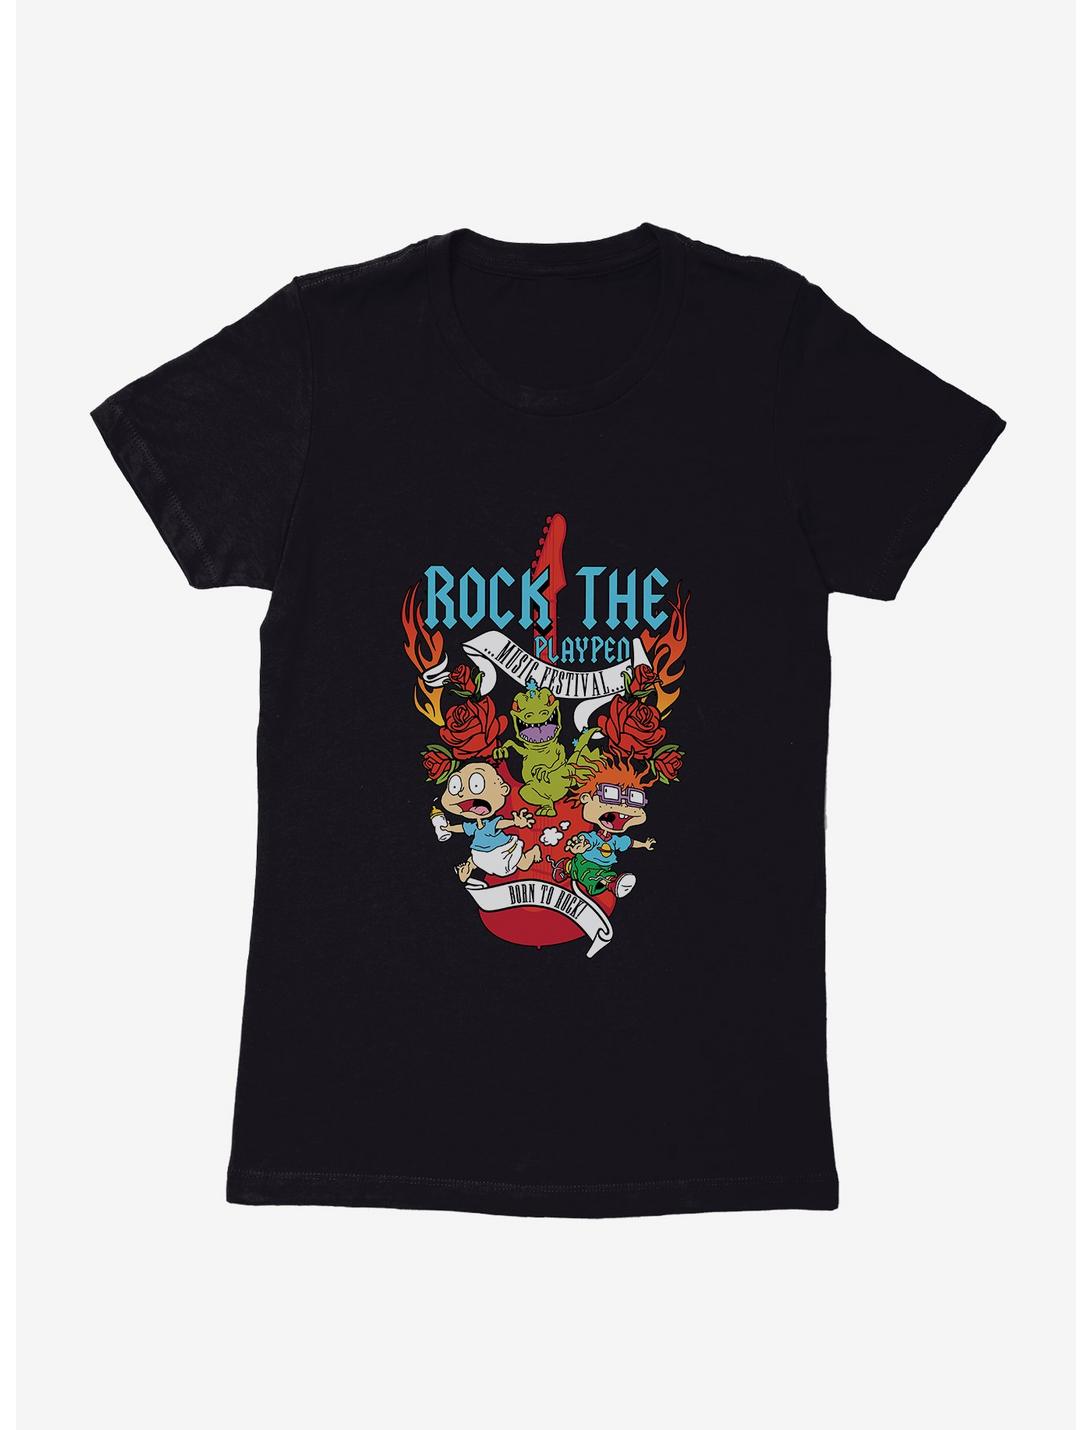 Rugrats Rock The Playpen Womens T-Shirt, BLACK, hi-res